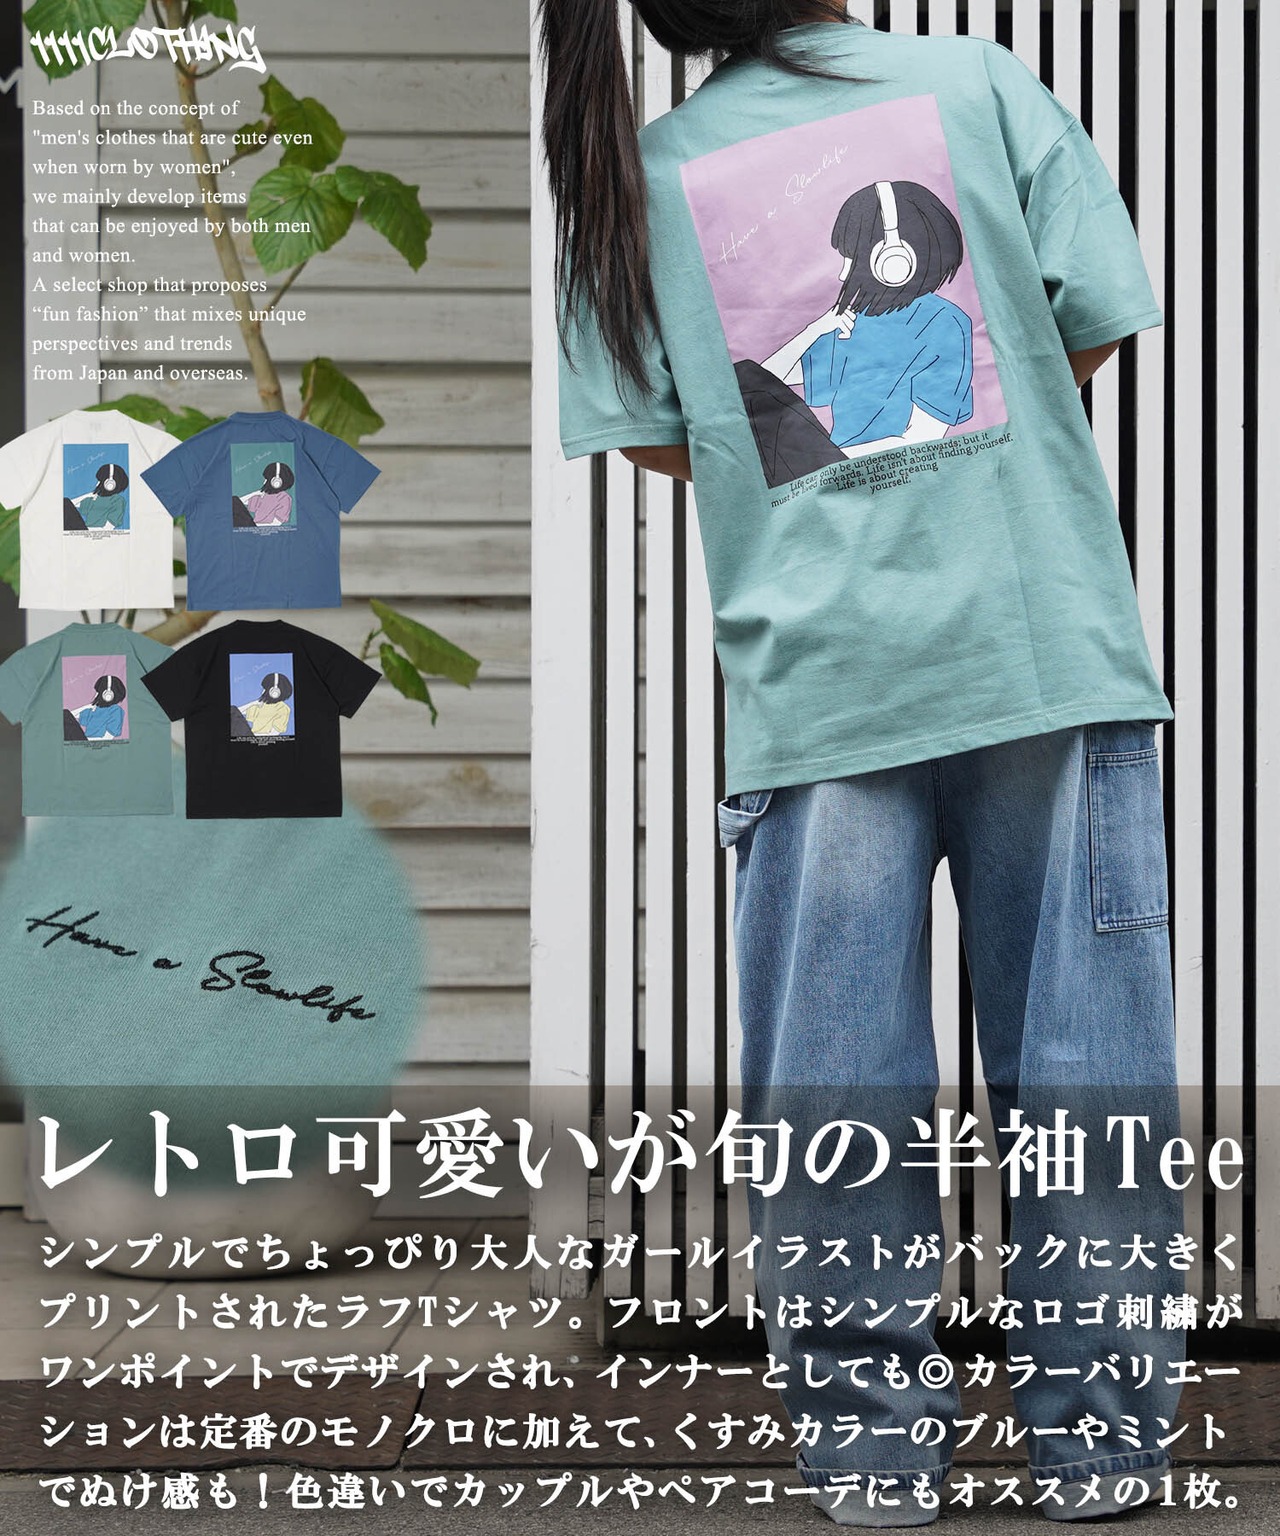 ◆ロゴ刺繍 イラストガール Tシャツ◆ef-s1237042e